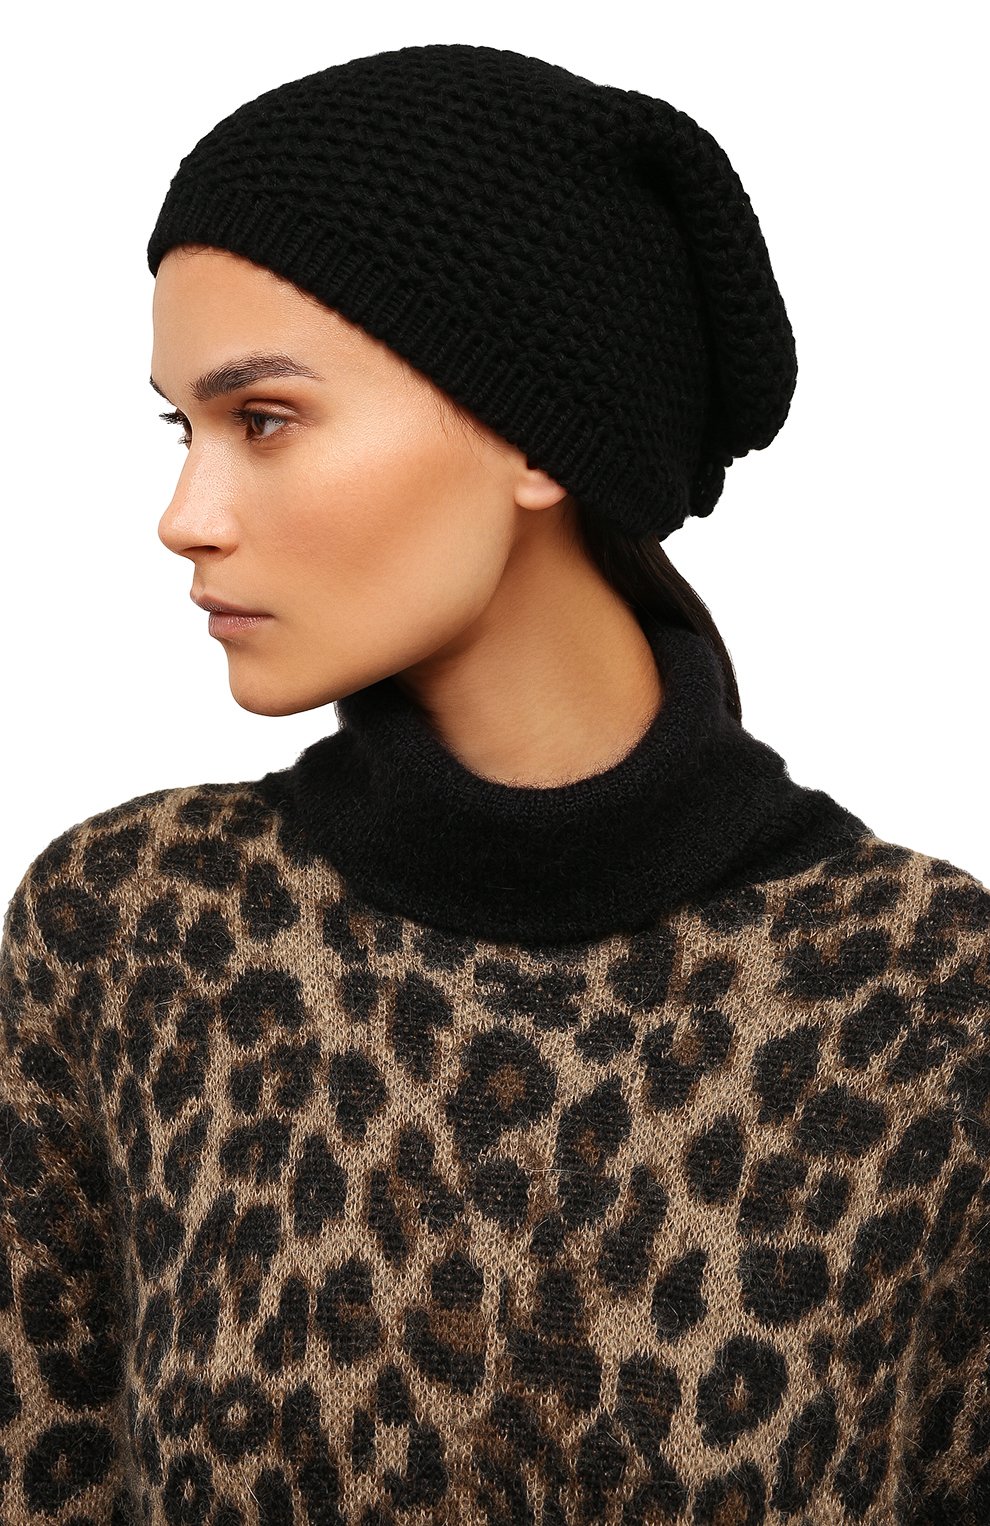 Женская кашемировая шапка INVERNI черного цвета, арт. 0097 CMG8 | Фото 2 (Материал: Текстиль, Кашемир, Шерсть)